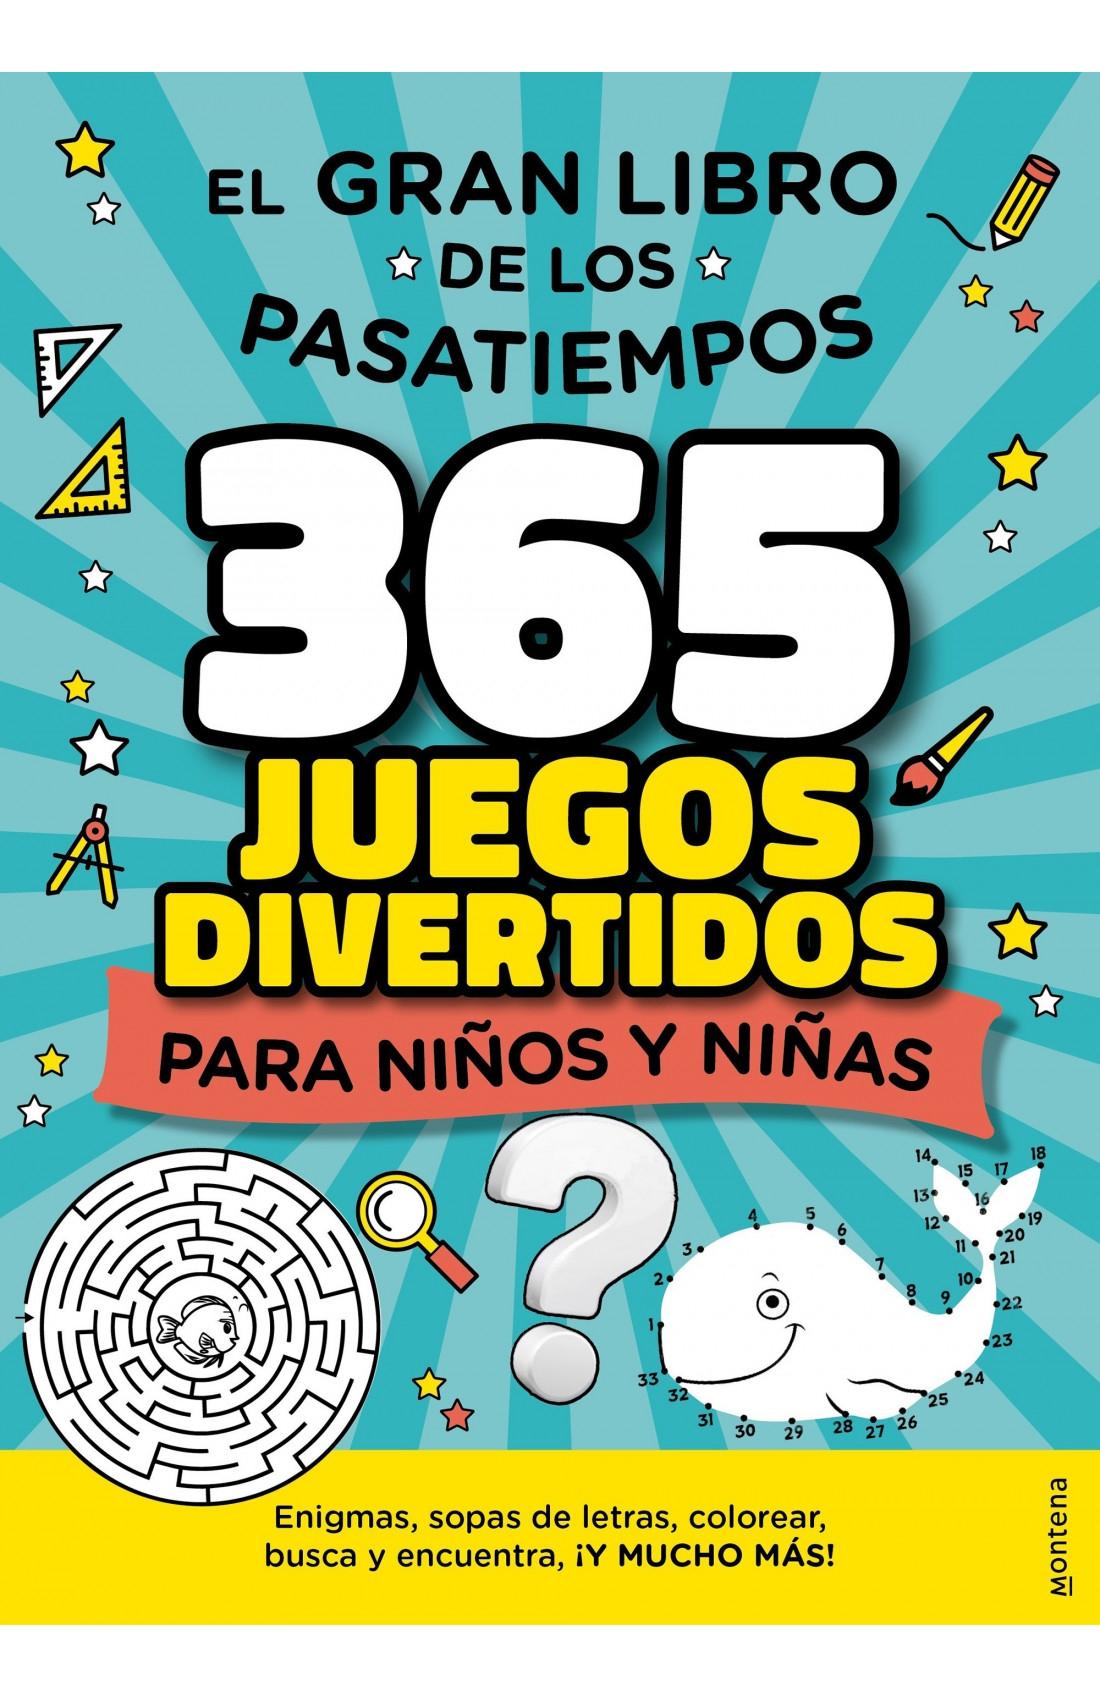 EL GRAN LIBRO DE LOS PASATIEMPOS "365 JUEGOS DIVERTIDOS PARA NIÑOS Y NIÑAS"